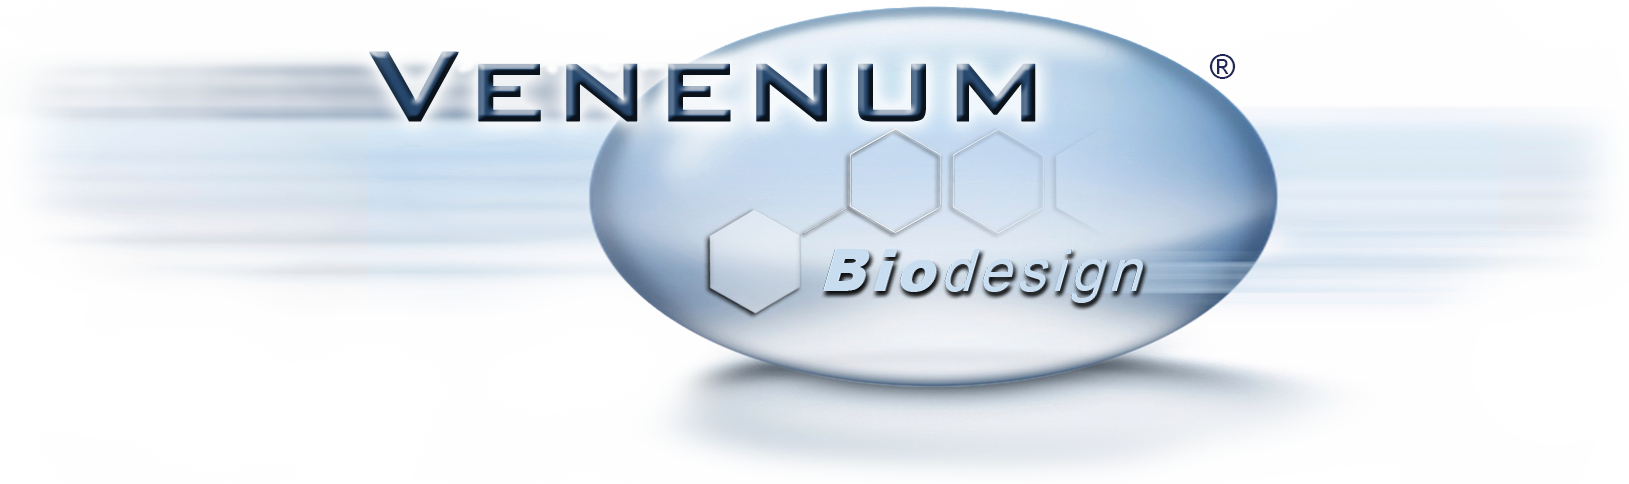 Venenum Biodesign